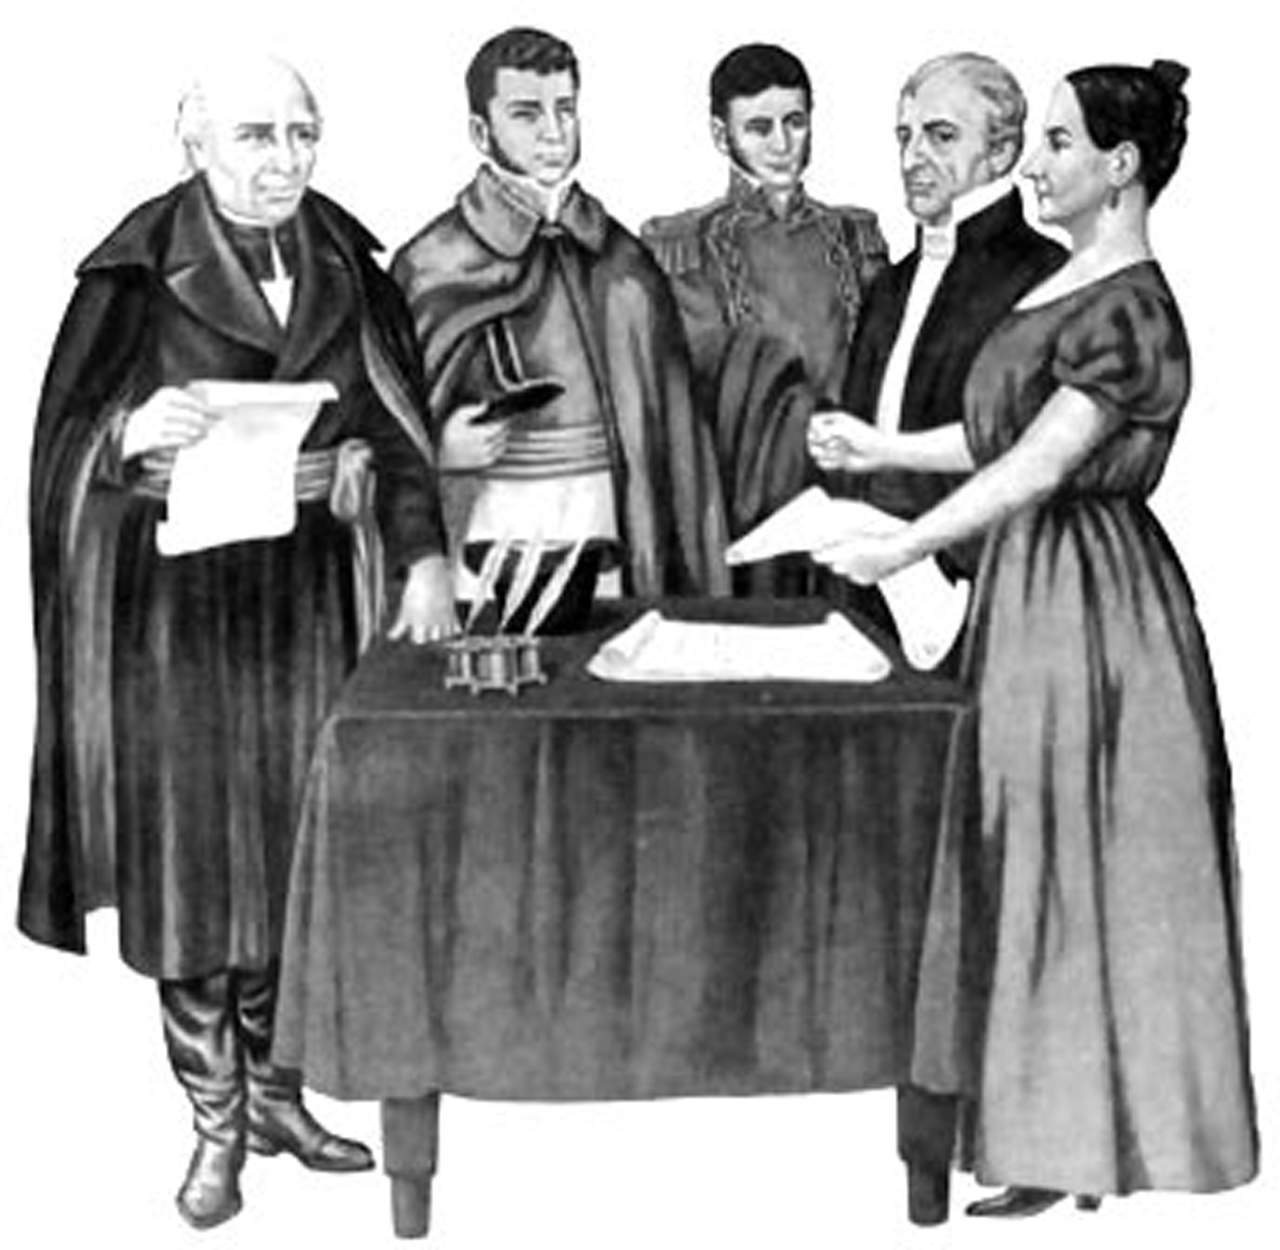 Miguel Hidalgo, Ignacio Allende, Juan Aldama, Miguel Domínguez y Josefa Ortiz en una reunión en Querétaro conspirando contra la colonia.